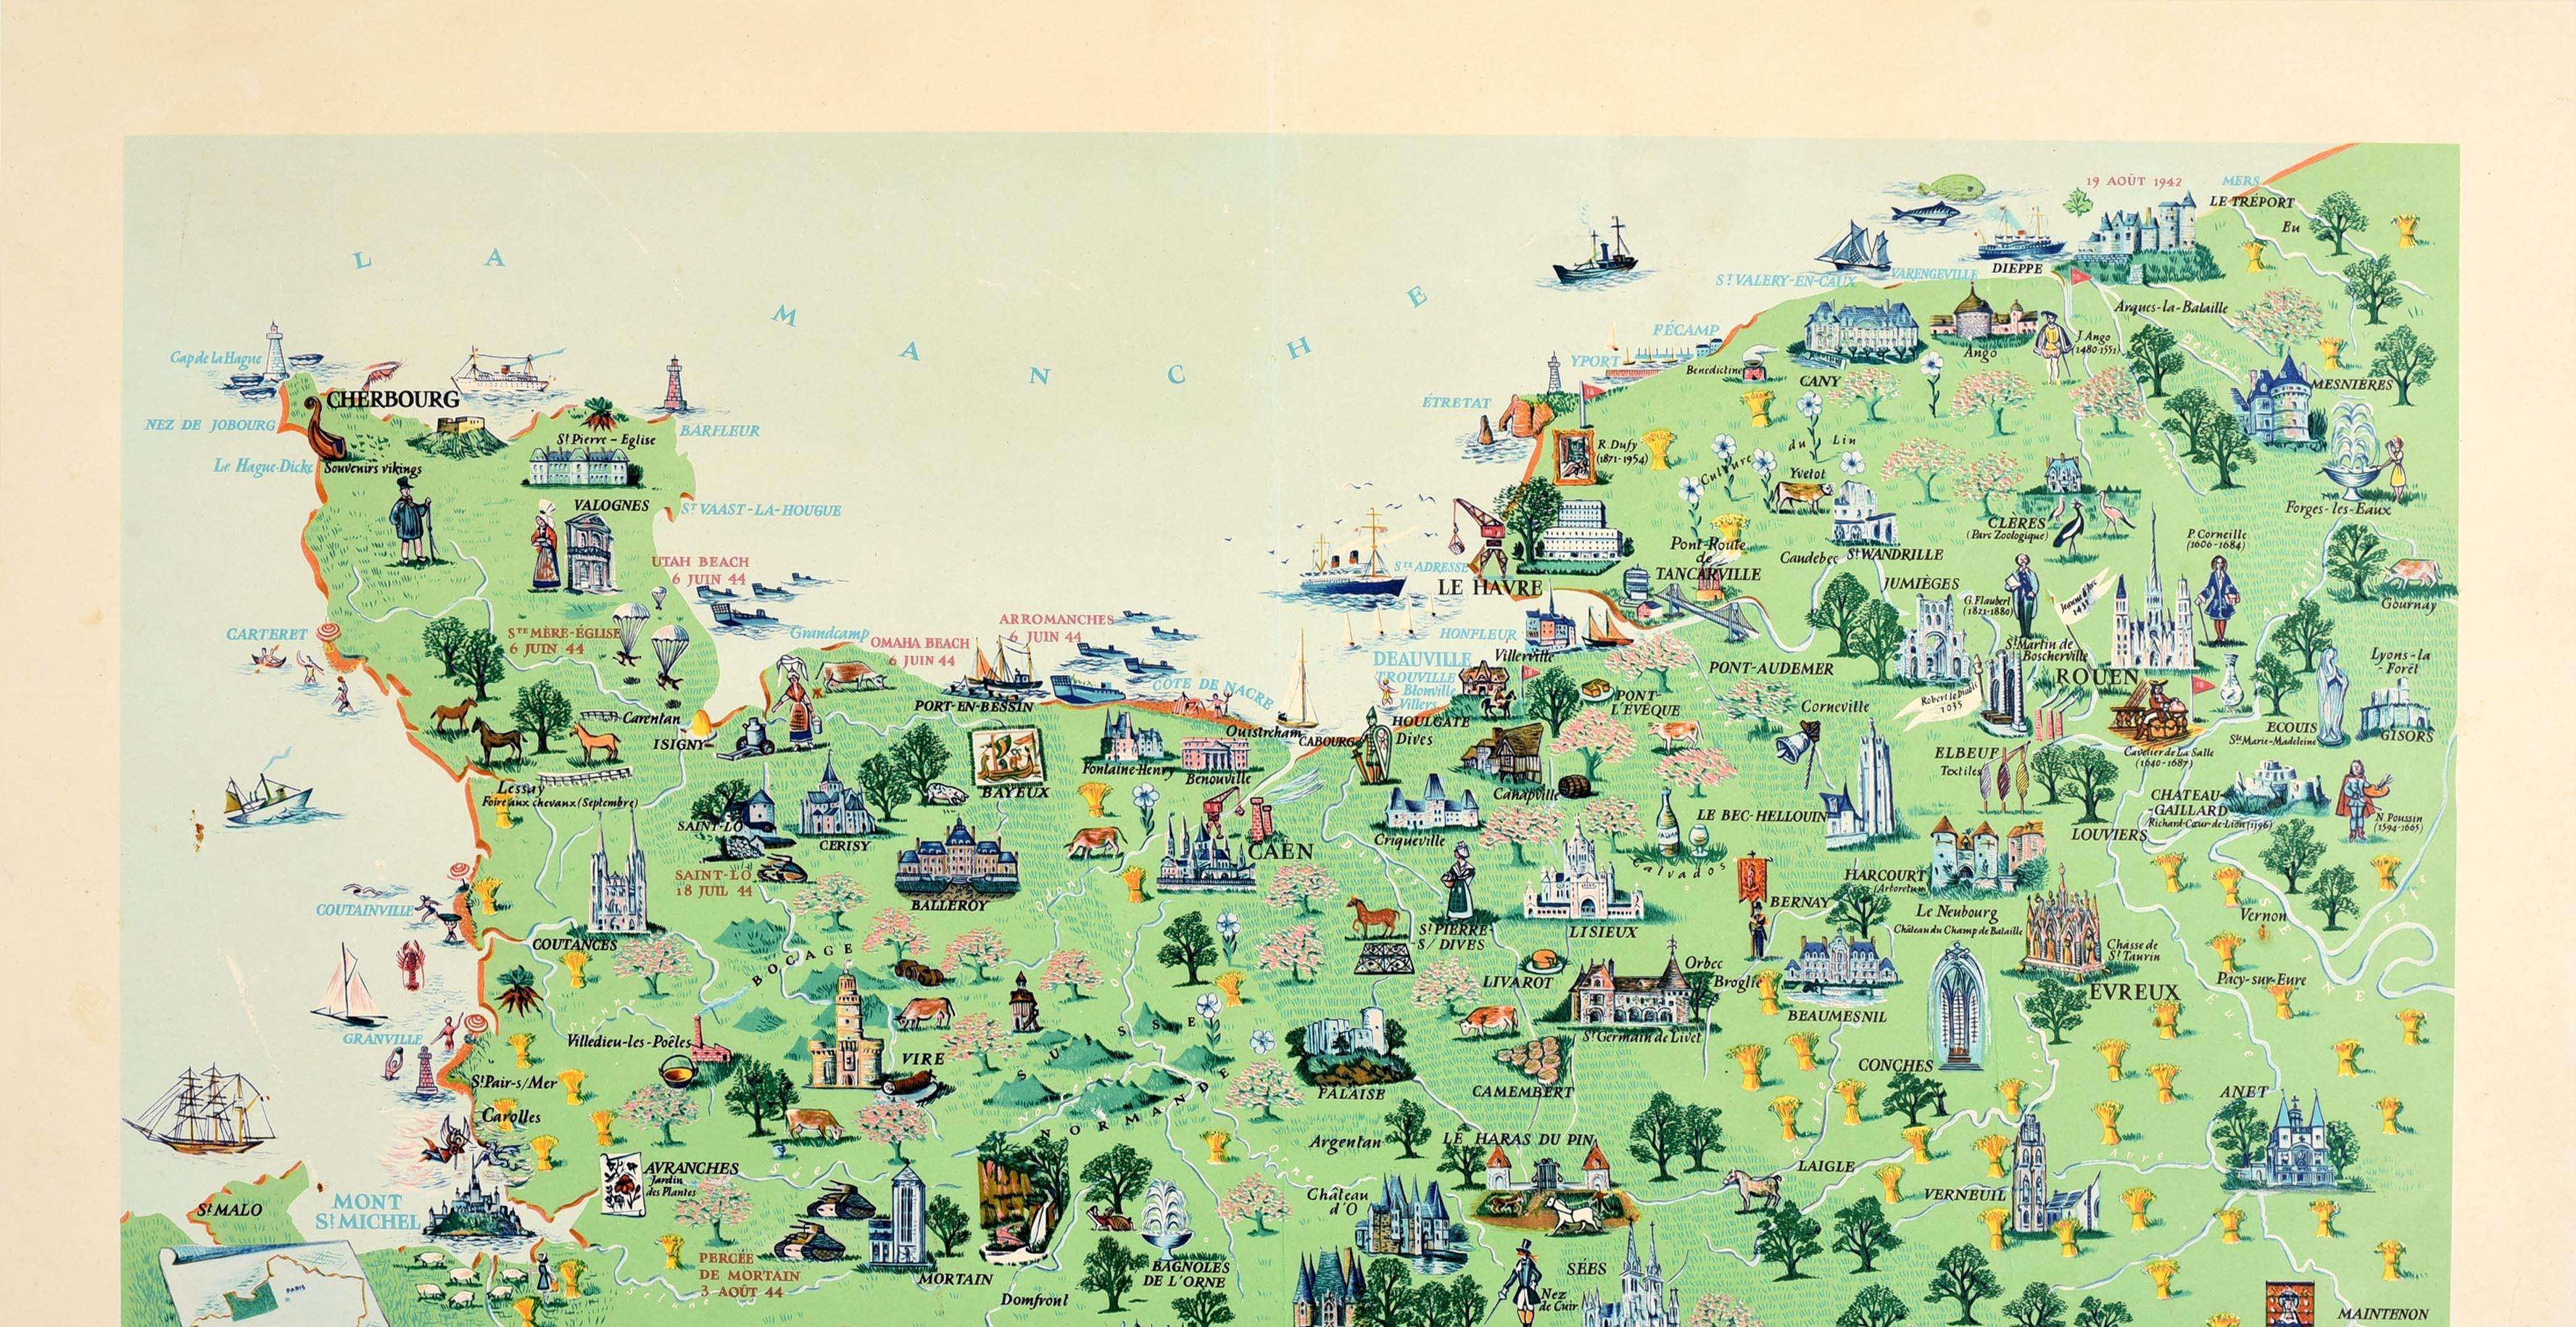 Affiche de voyage originale d'époque pour la Normandie - La Normandie France - présentant une carte illustrée montrant des personnes, des lieux d'intérêt historique, des collines et des arbres, des chevaux, des voiliers et des bateaux en mer sur la